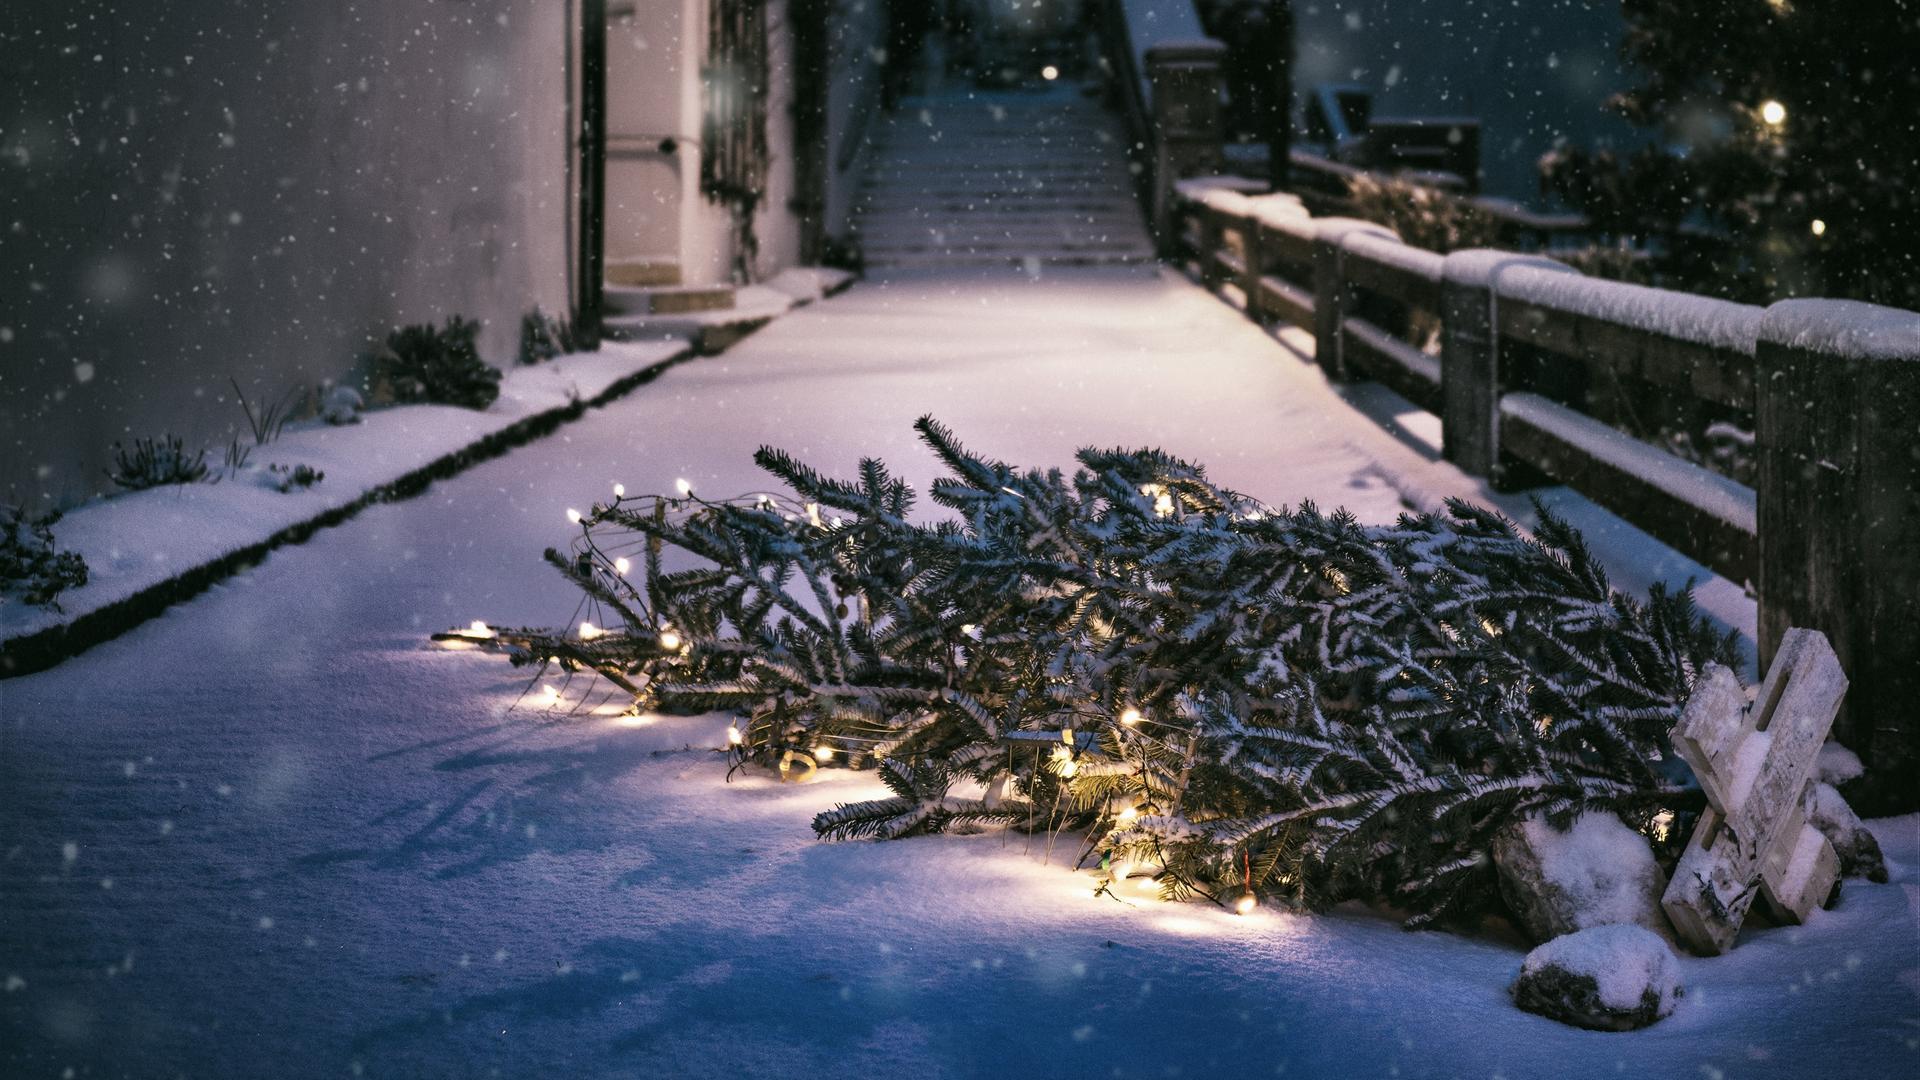 Es ist Nacht und ein Weihnachtsbaum liegt auf einem verschneiten Gehweg.